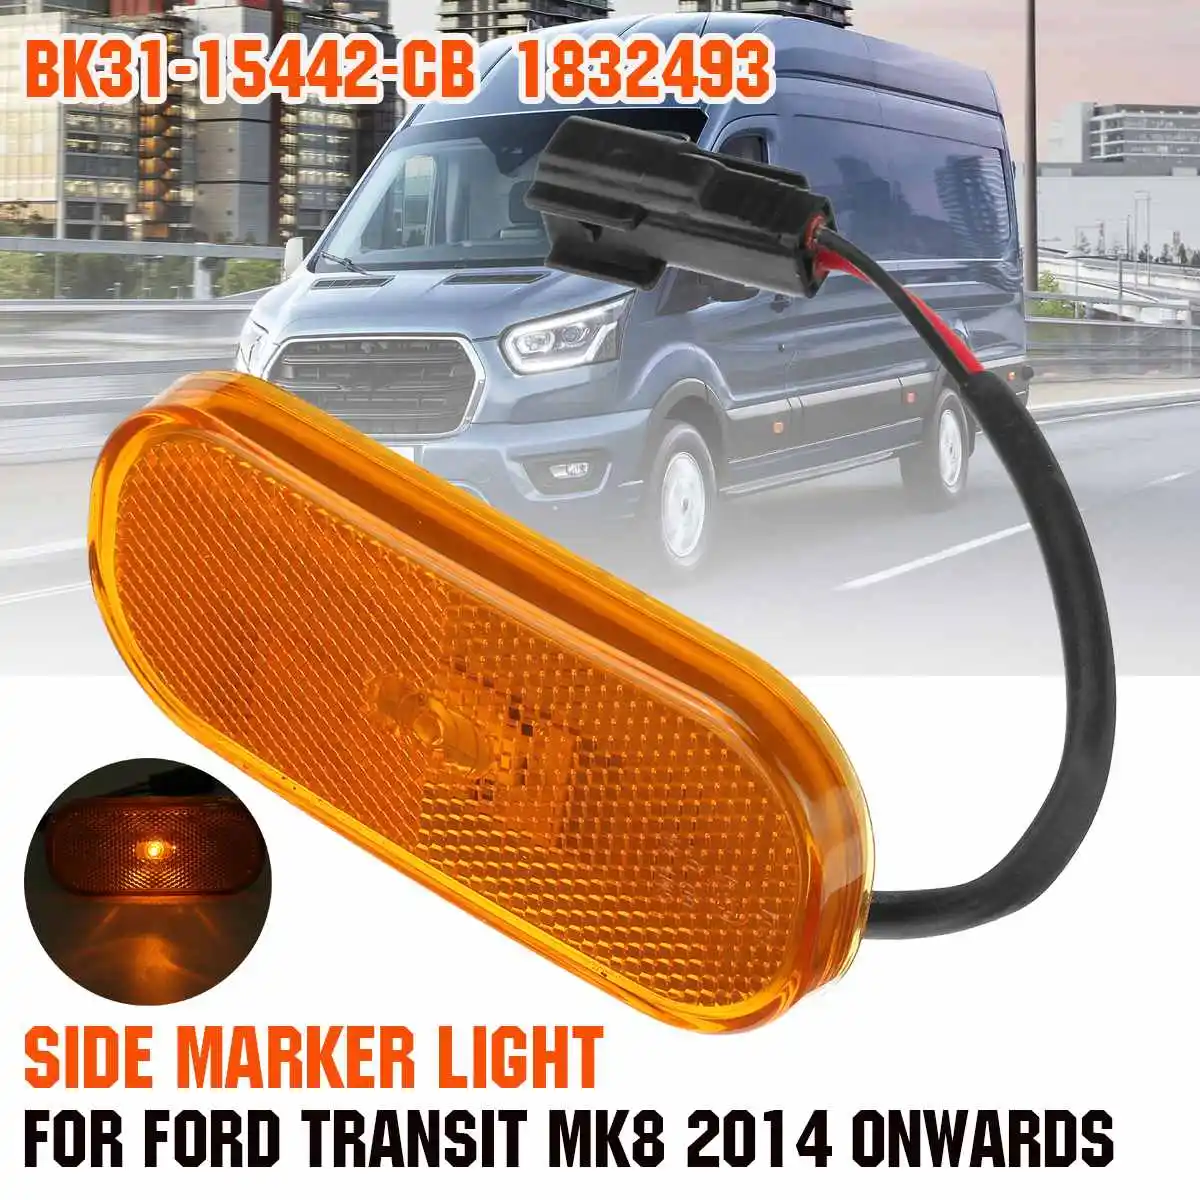 

Amber /Yellow Side Marker Light Lamp Lens 1832493 BK31-15442-CB For Ford Transit MK8 2014 2015 2016 2017 2018 2019 2020 2021